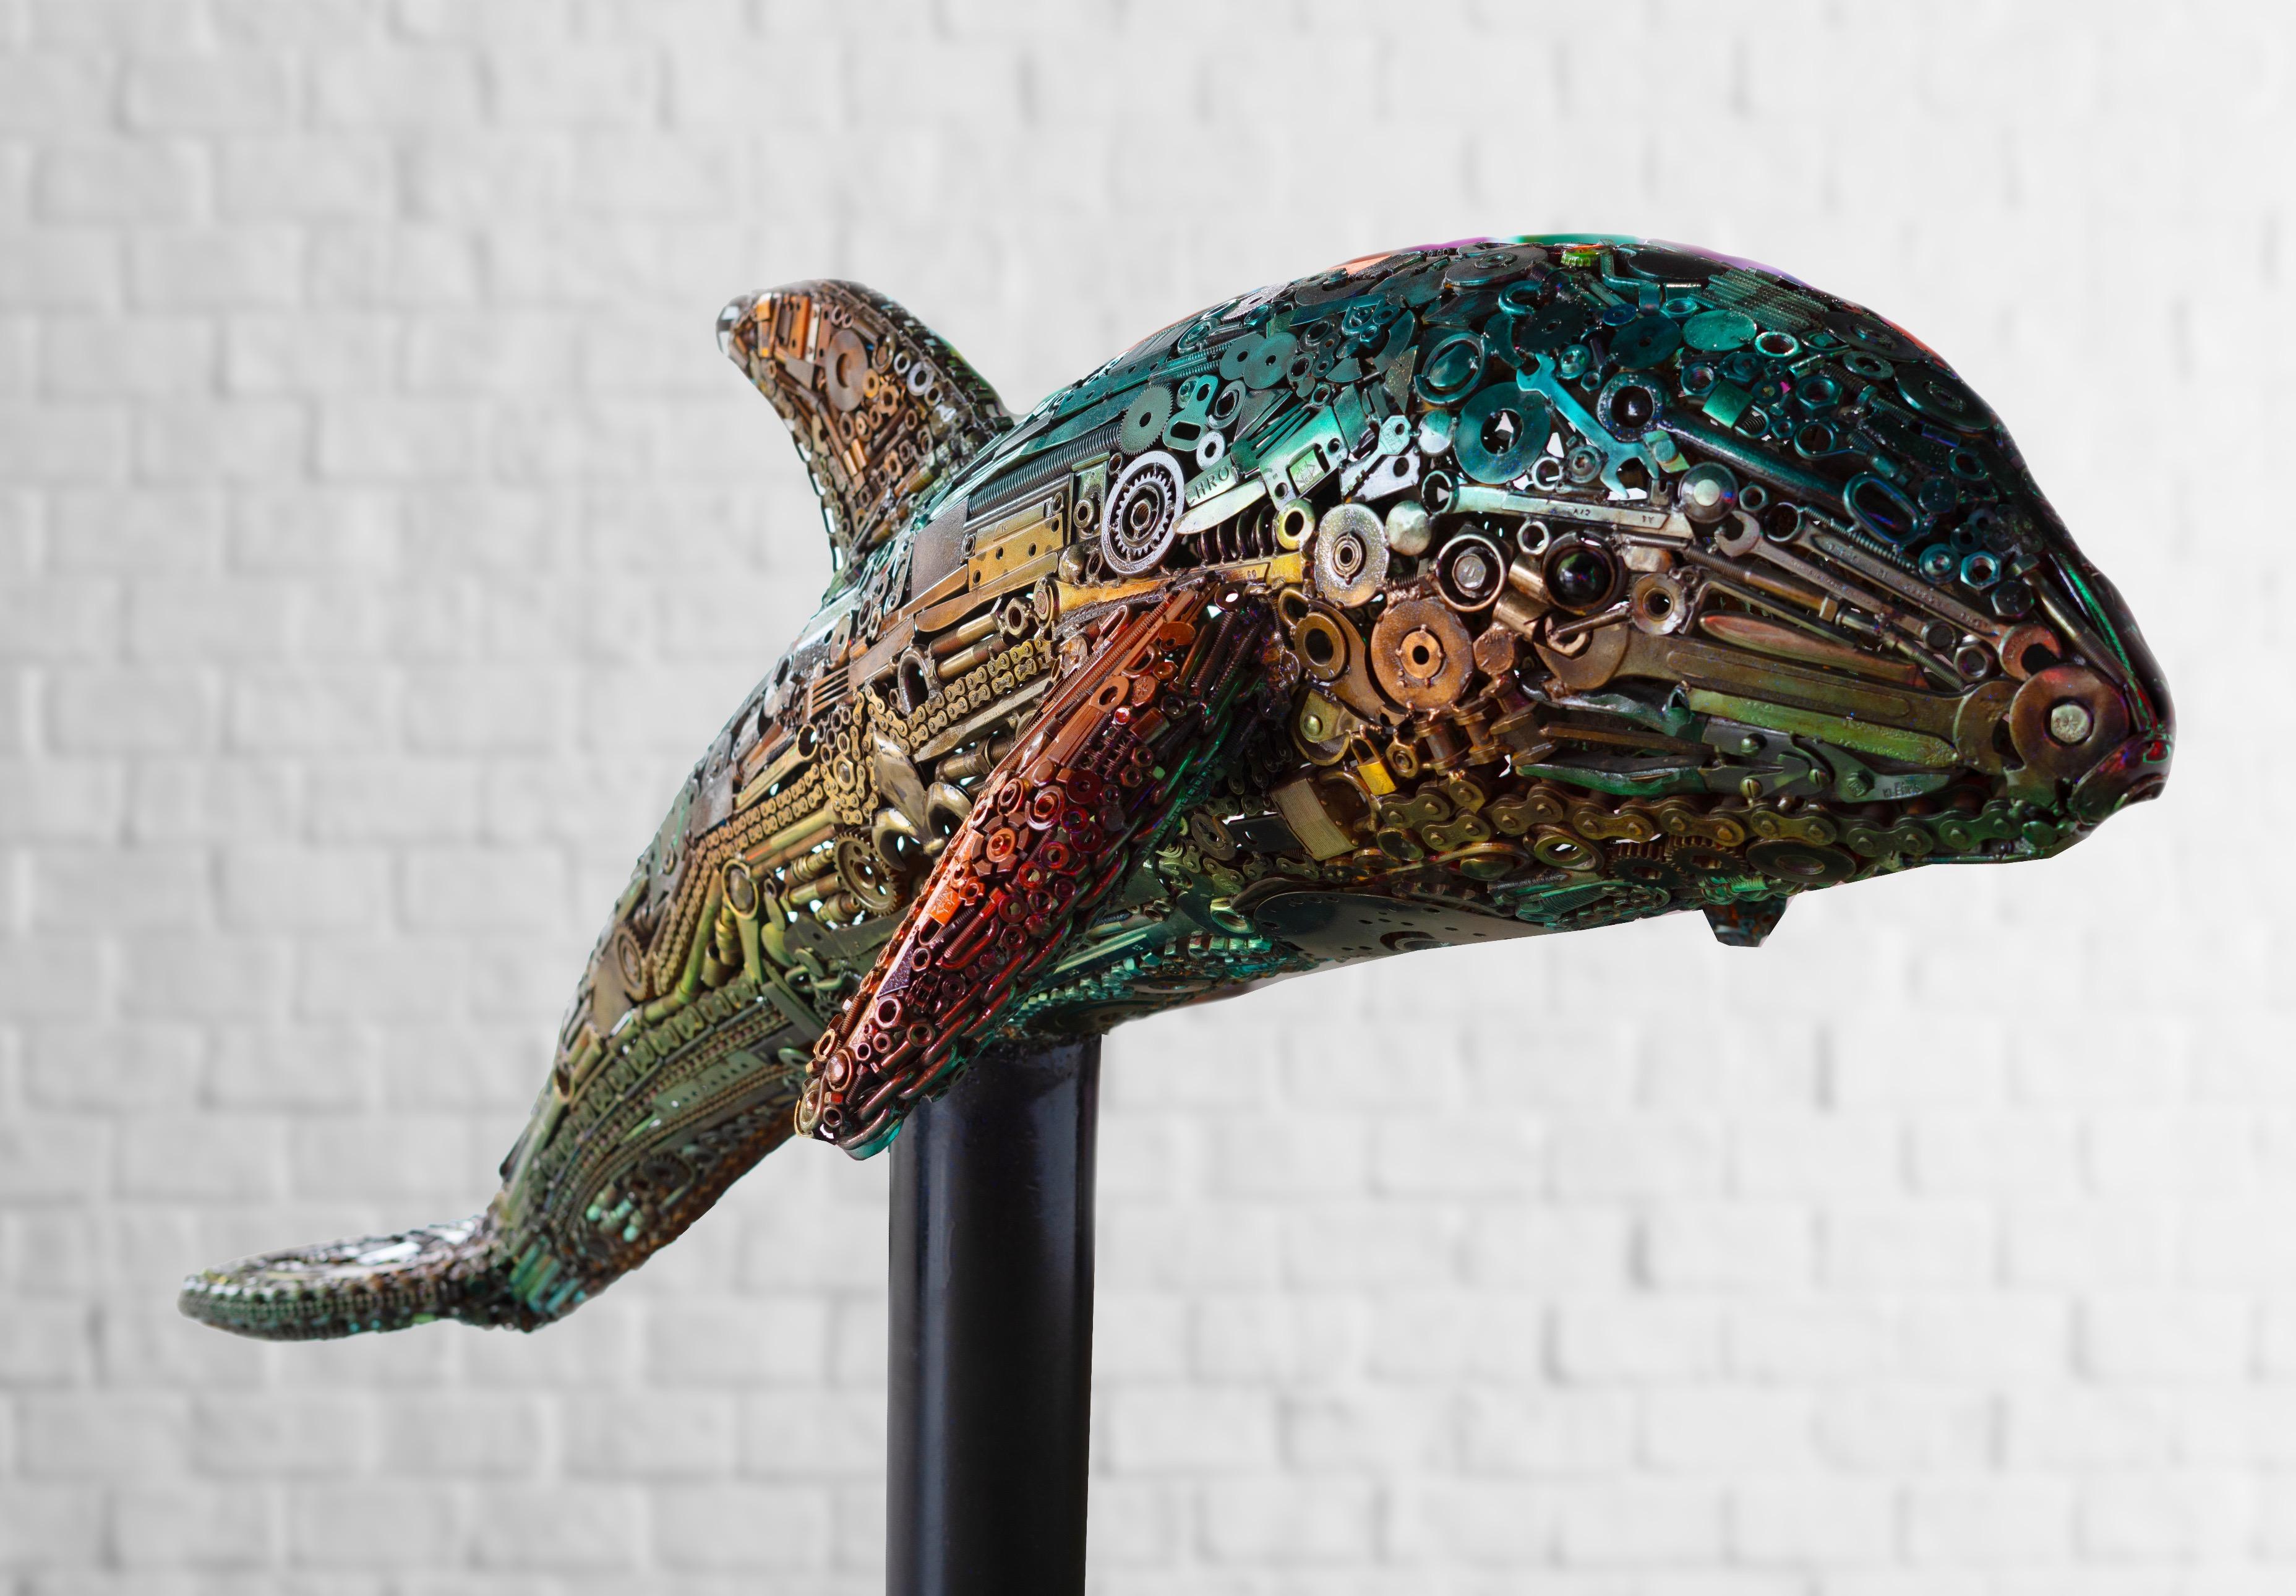 RISK Figurative Sculpture - Dolphin Sculpture